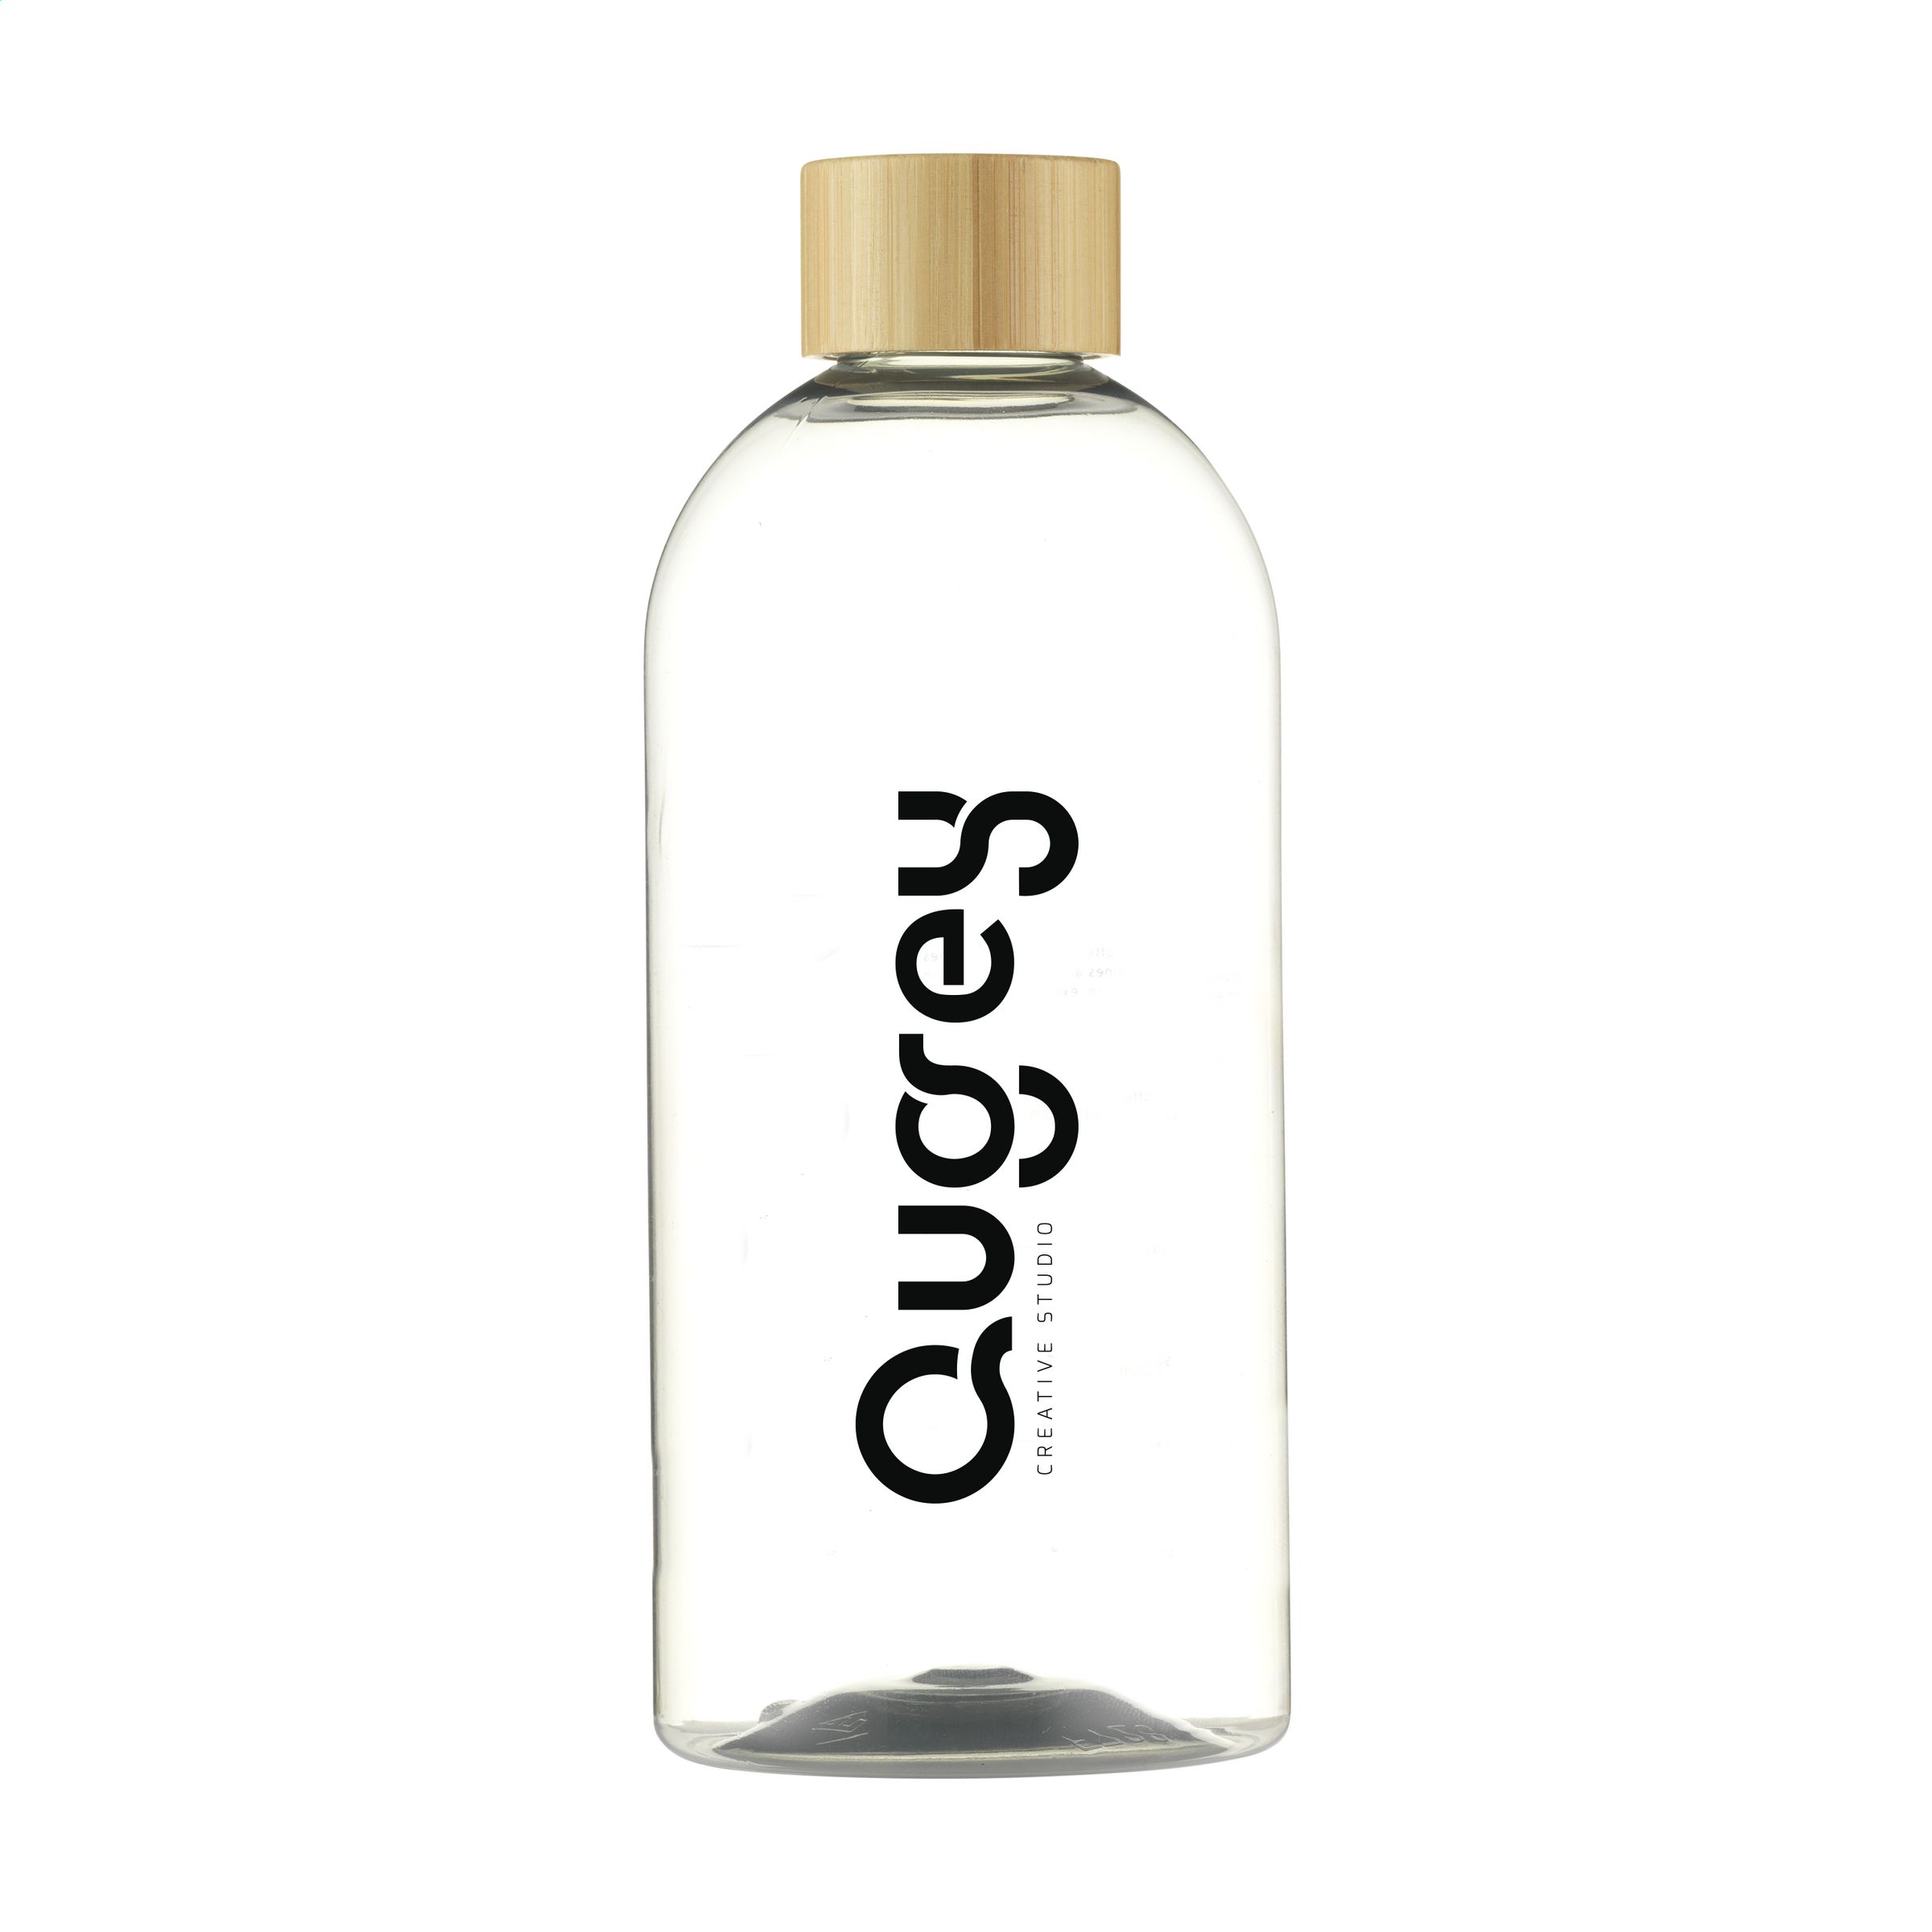 Bottiglia d'acqua ecologica in RPET al 100% - Ostiano